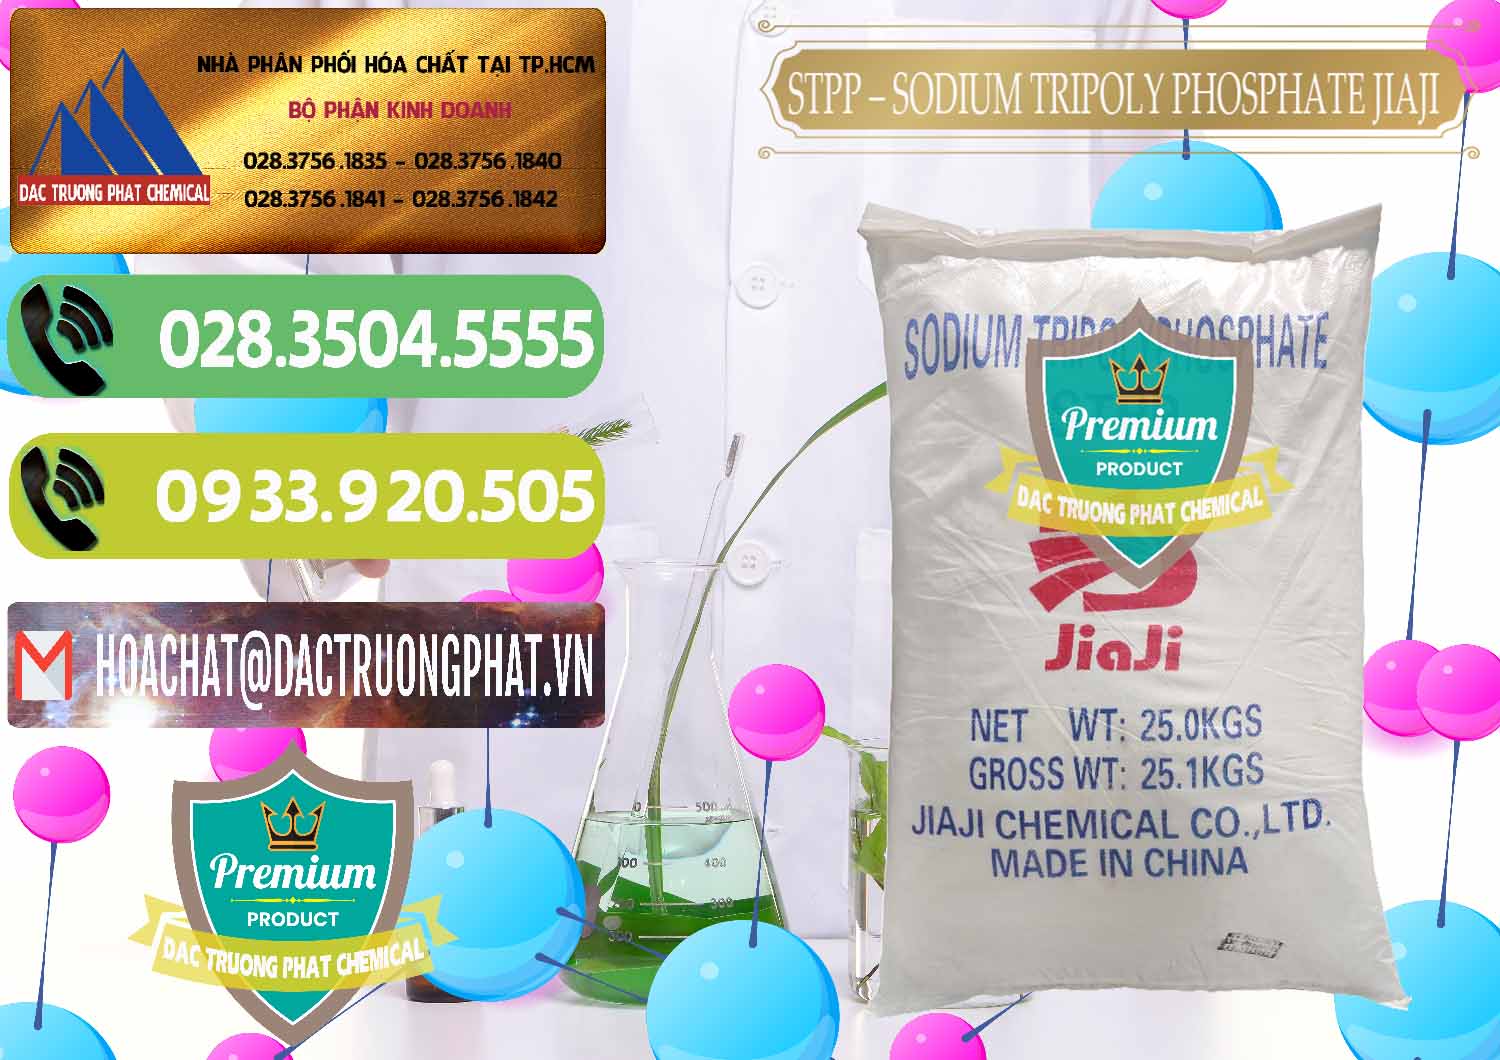 Cty bán và cung ứng Sodium Tripoly Phosphate - STPP Jiaji Trung Quốc China - 0154 - Nhà cung cấp _ bán hóa chất tại TP.HCM - hoachatmientay.vn